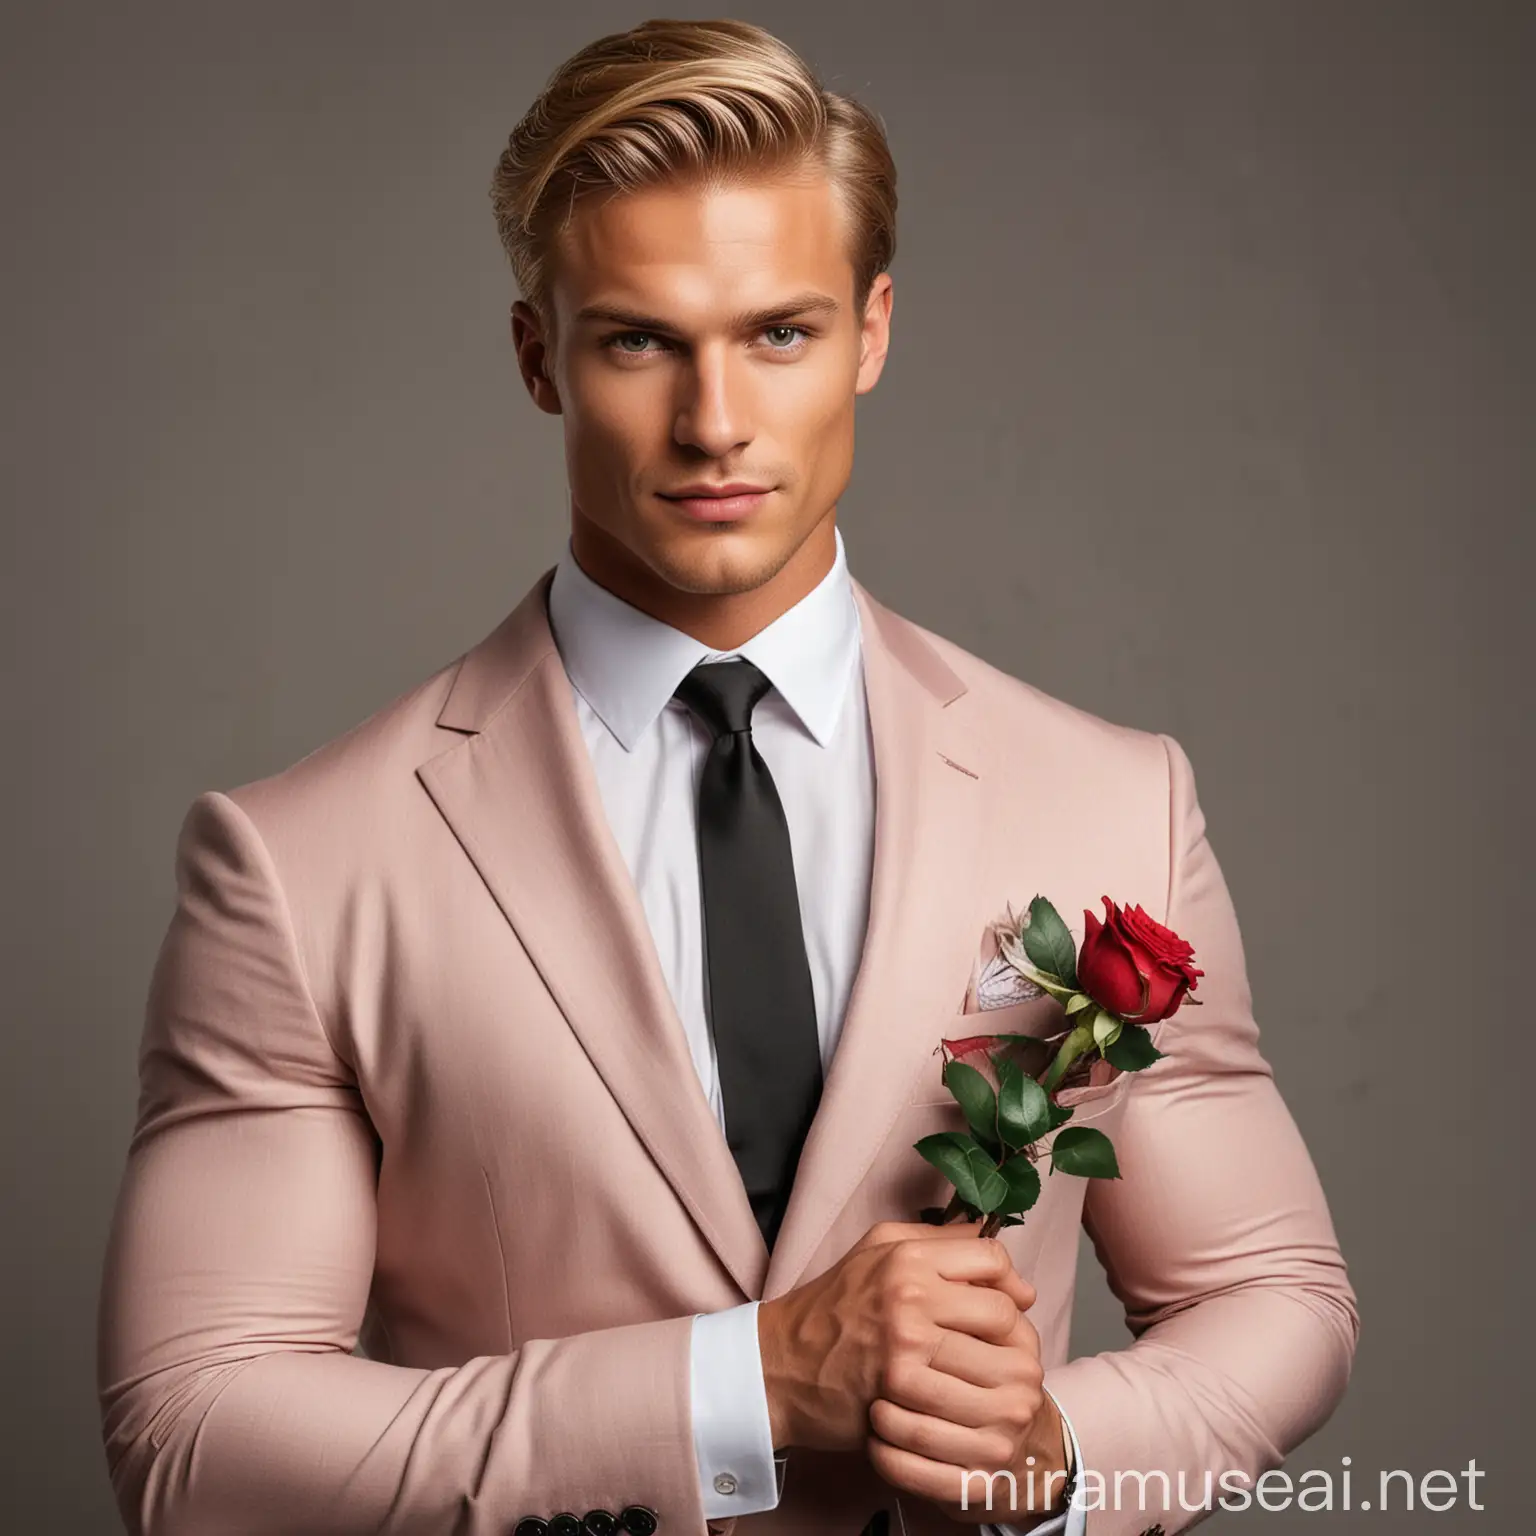 Hombre rubio, guapo y musculoso con traje, sosteniendo una rosa 